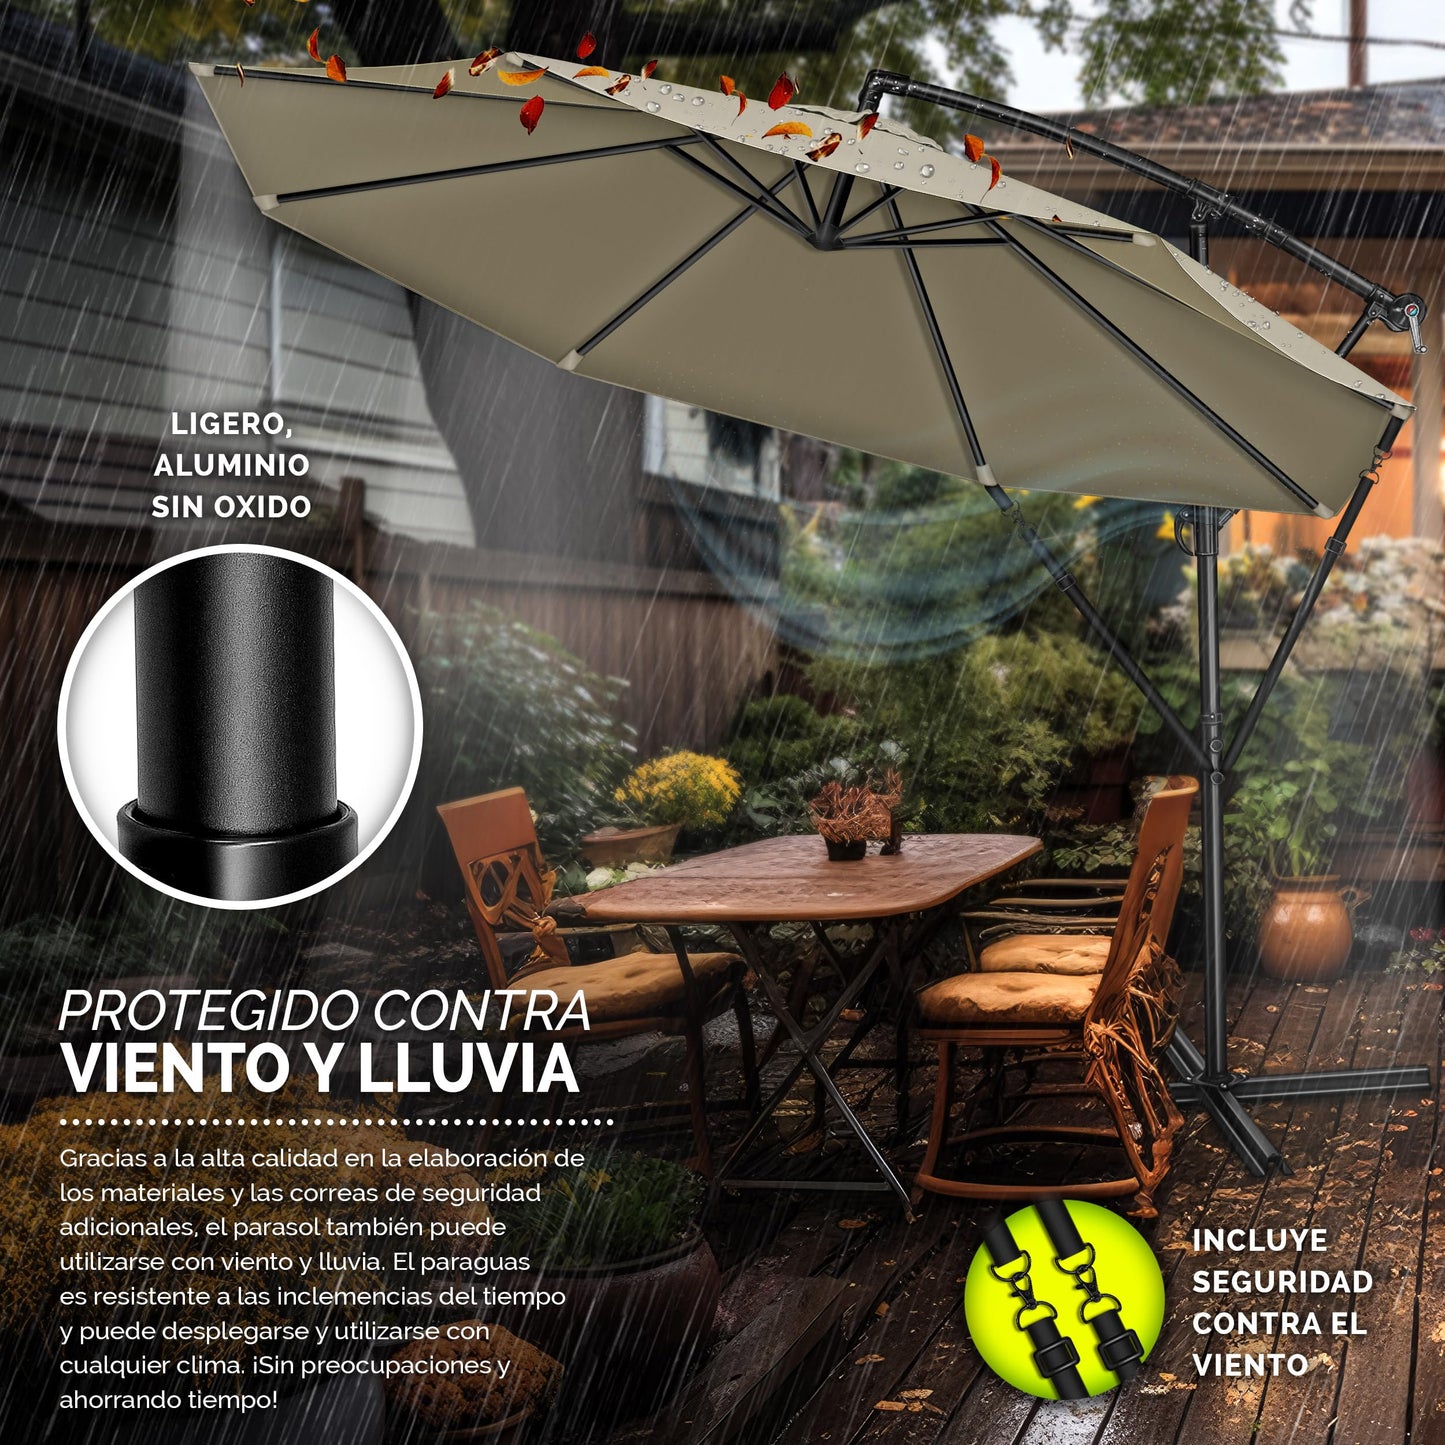 tillvex 300 cm Sombrilla Excentrico con Manivela, Funda y Protectora de cabrestante | Parasol para Terraza Jardín Balcón Patio | Giratorio 360º, Protección UV